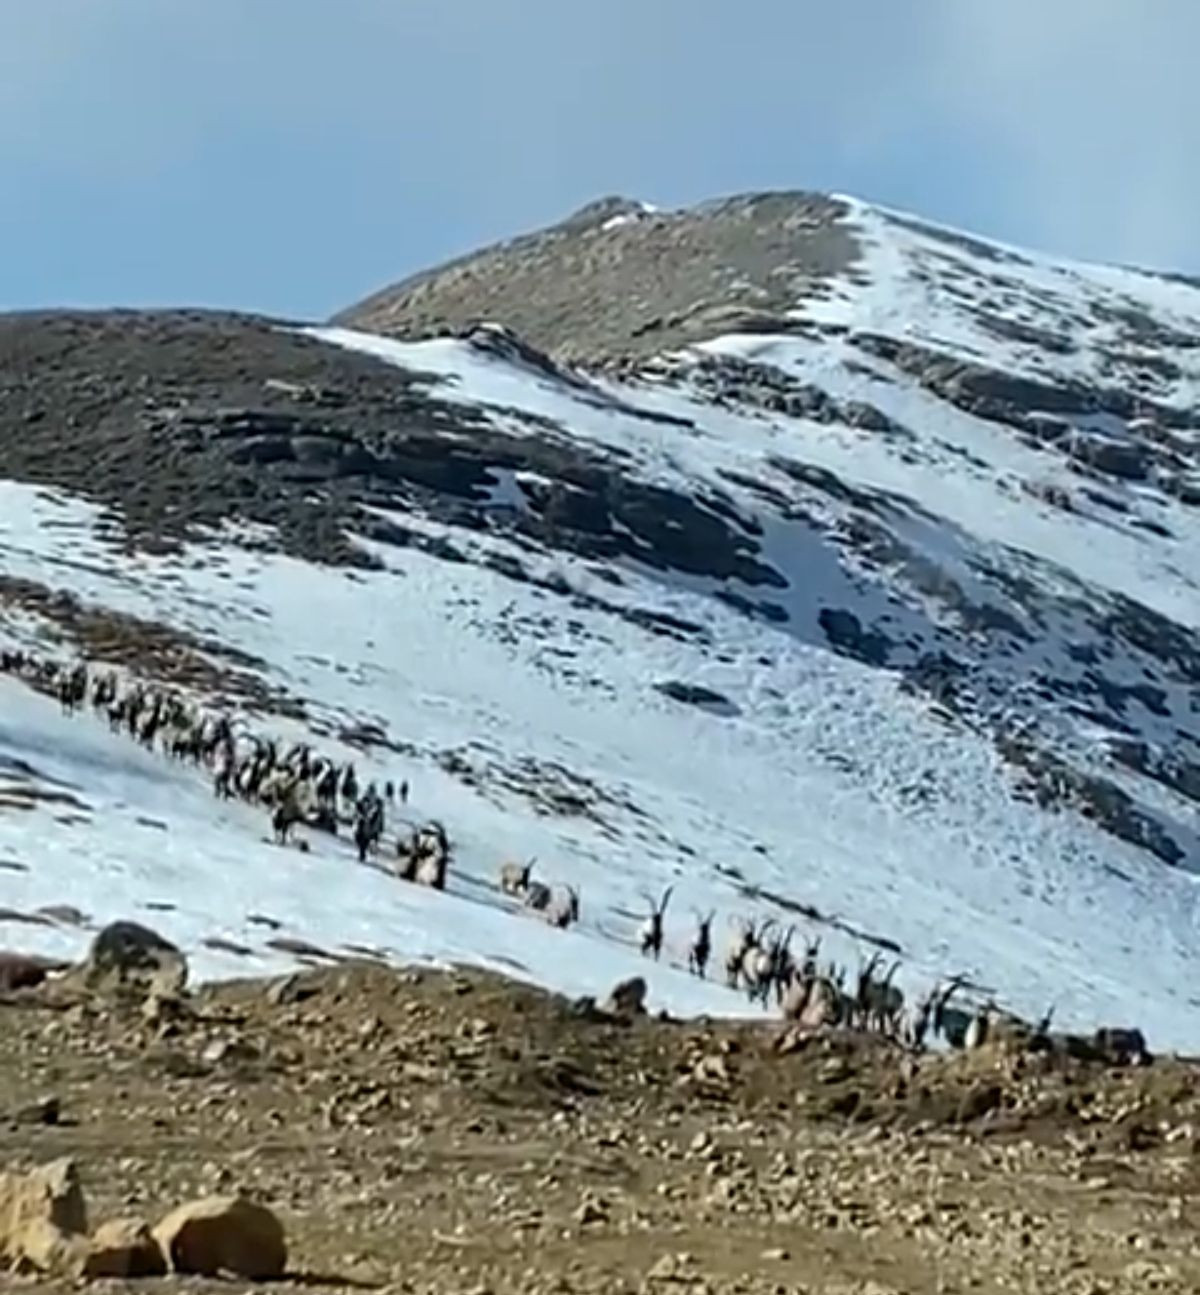 Dersim'in dağ keçileri sürü halinde görüntülendi - Sayfa 3